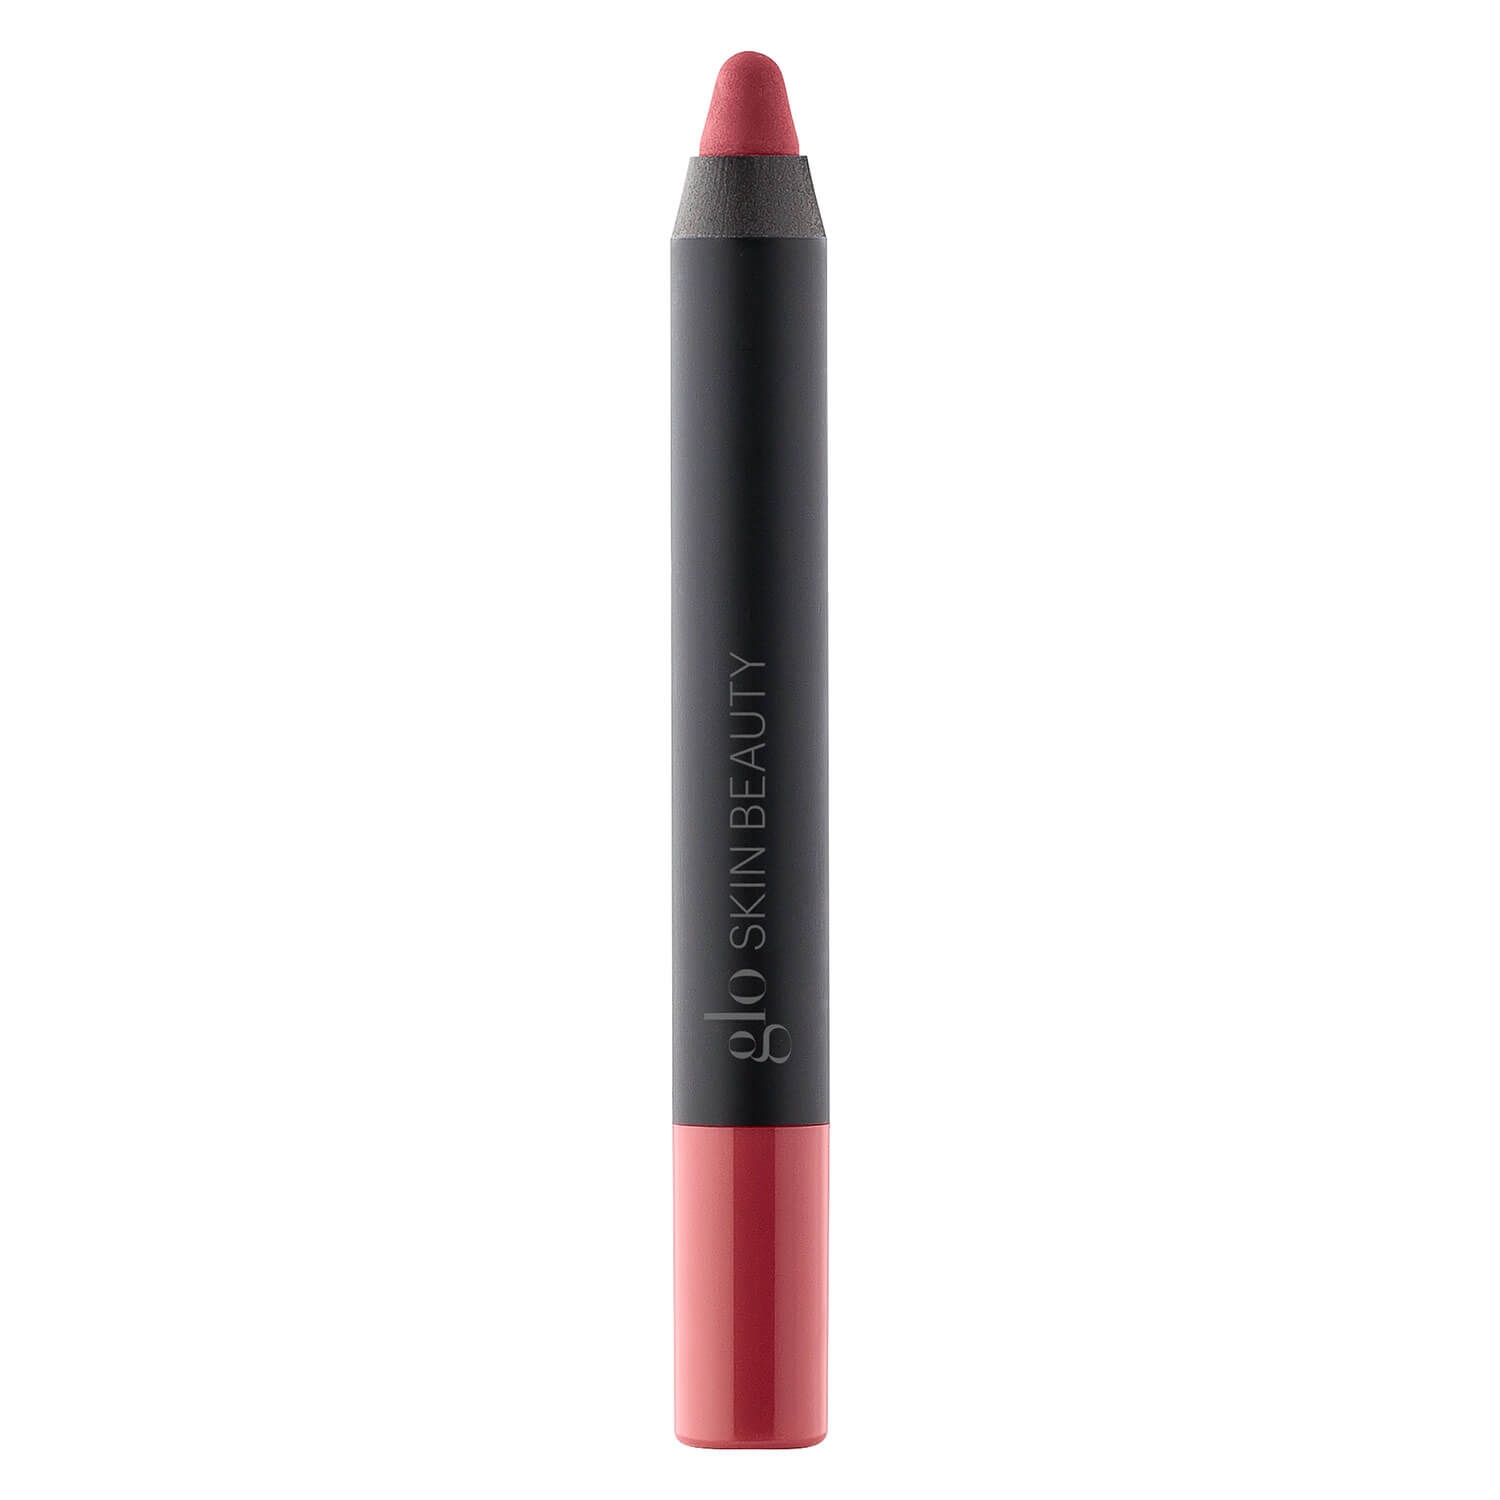 Produktbild von Glo Skin Beauty Lip Pencil - Suede Matte Crayon Demure